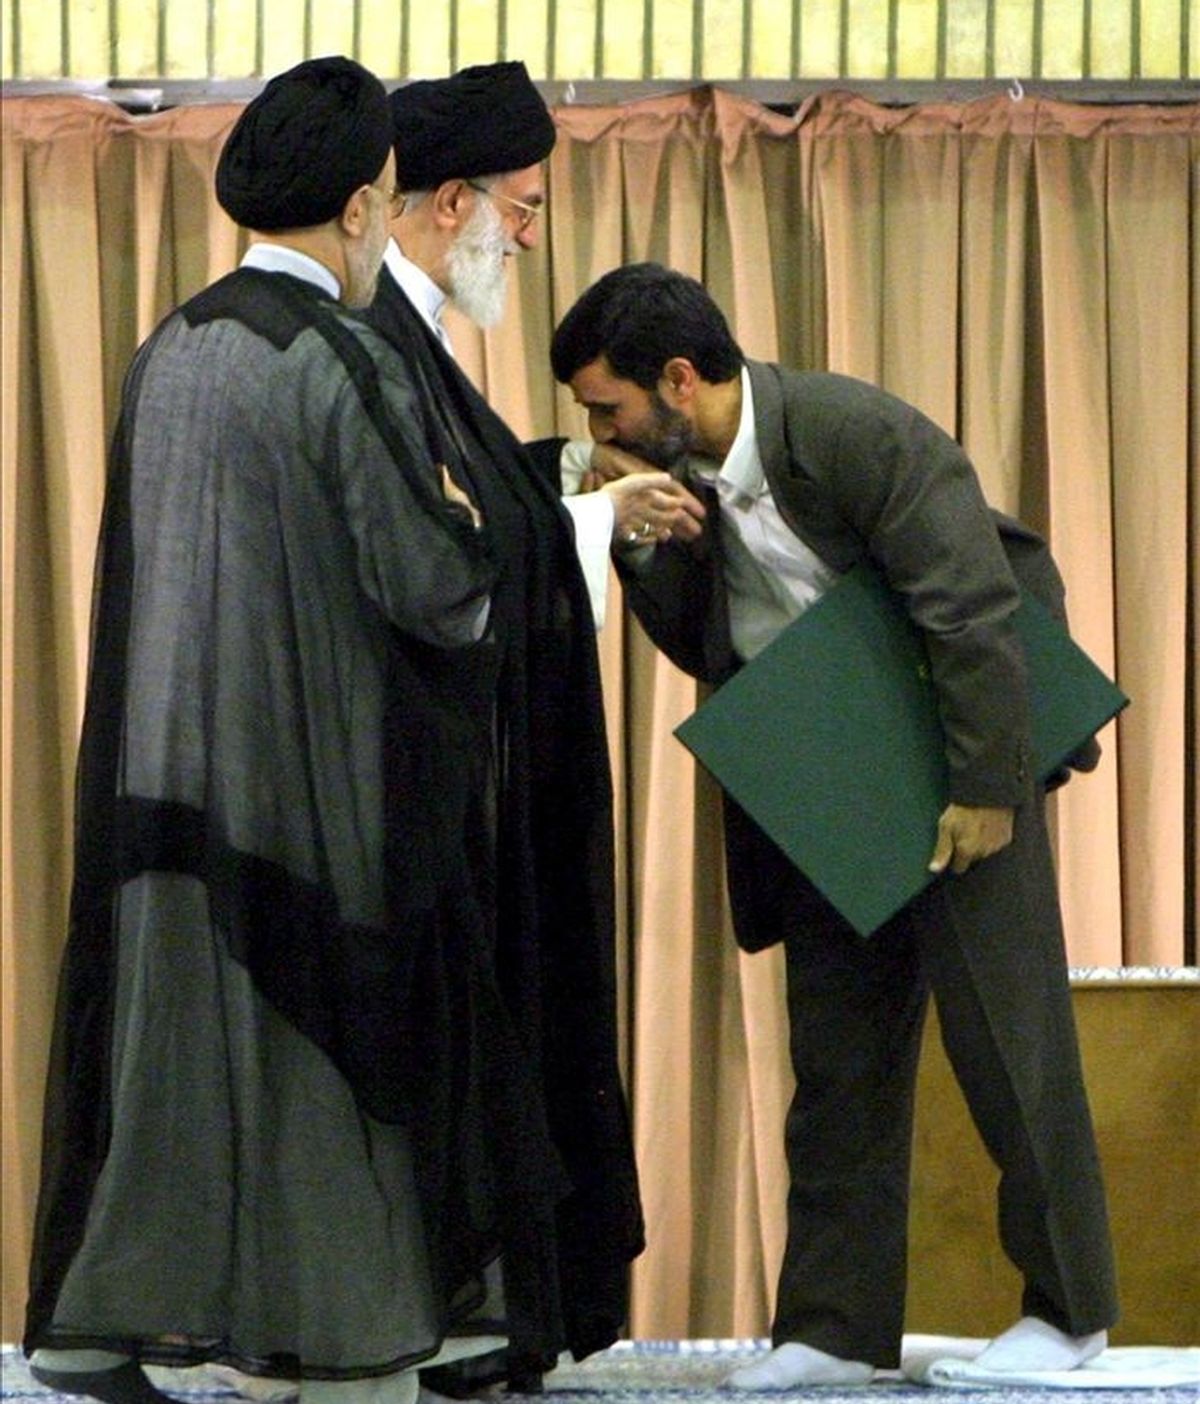 El presidente de Irán, Mahmud Ahmadineyad (d), besando la mano del líder supremo iraní, el ayatolá Alí Jameneí (c), durante una ceremonia en una mezquita de Teherán en 2005. EFE